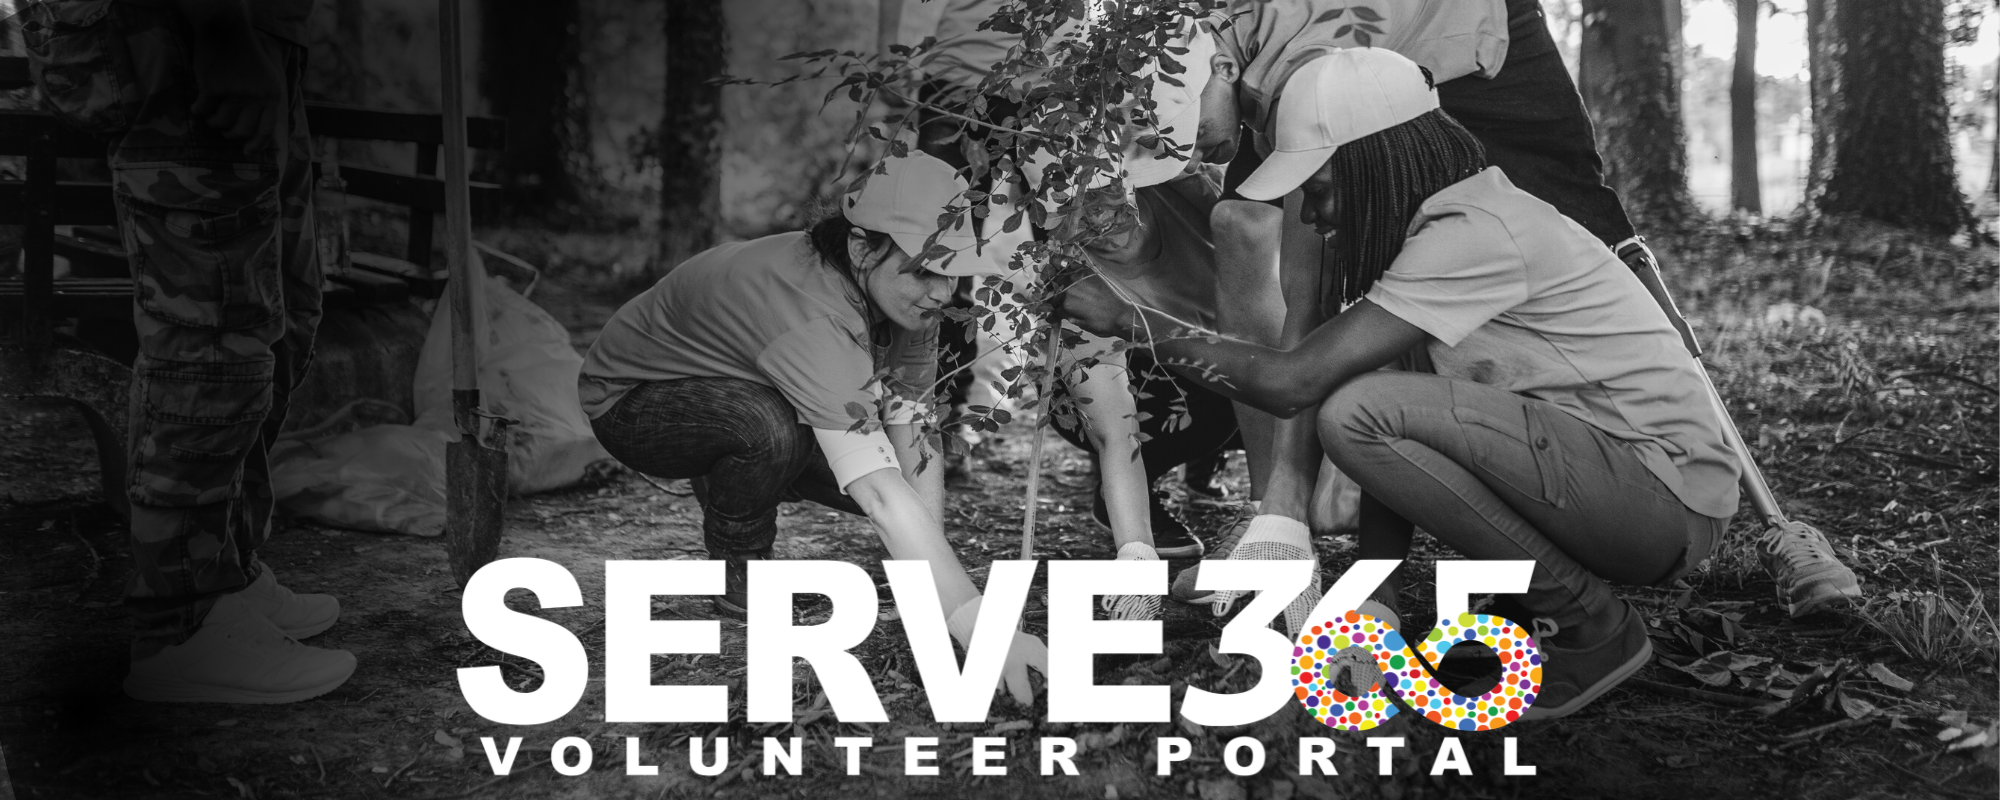 SERVE365 Volunteer Portal logo on top of an image of people volunteering